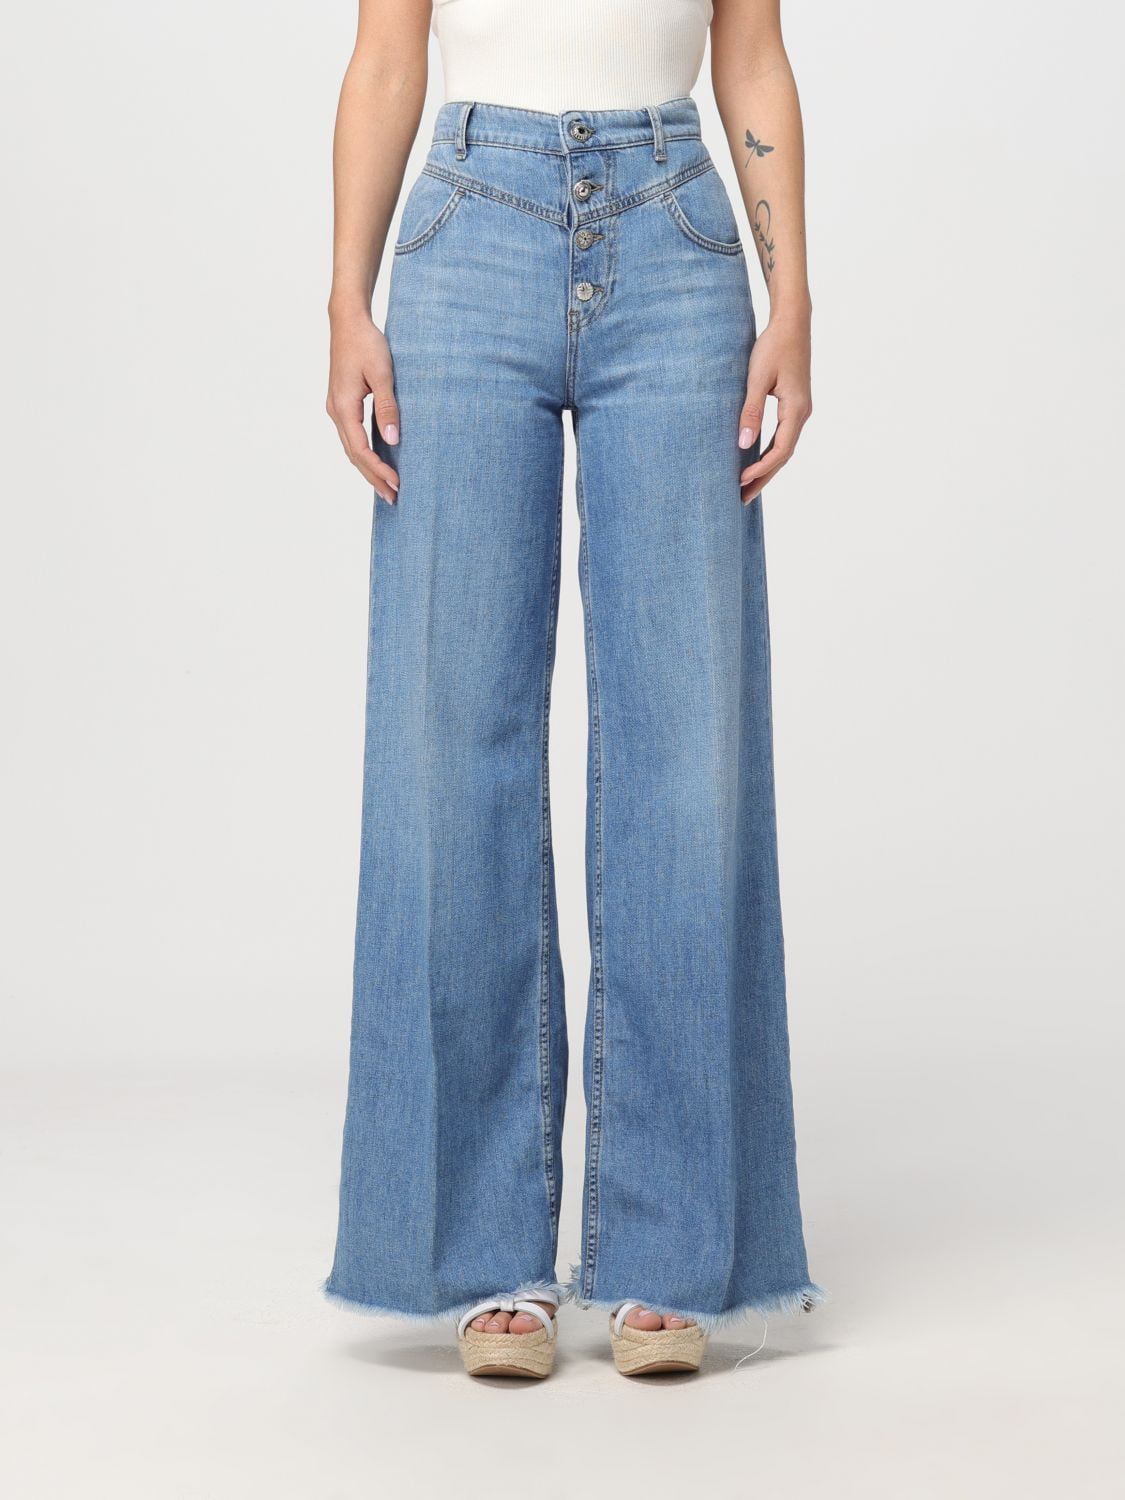 Liu Jo Jeans Woman Denim Woman - Walmart.com